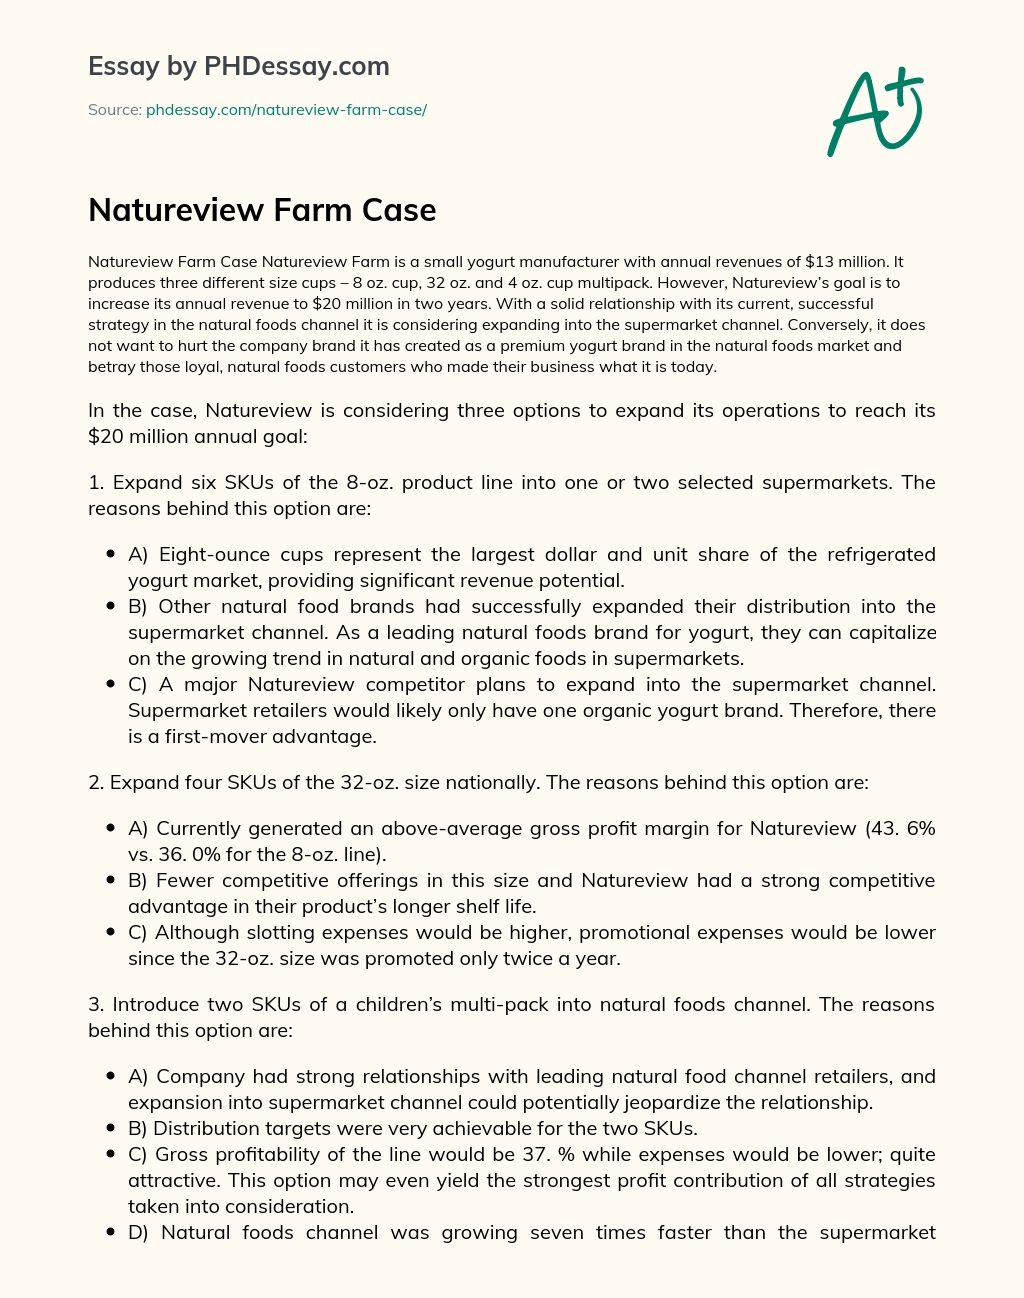 Natureview Farm Case essay